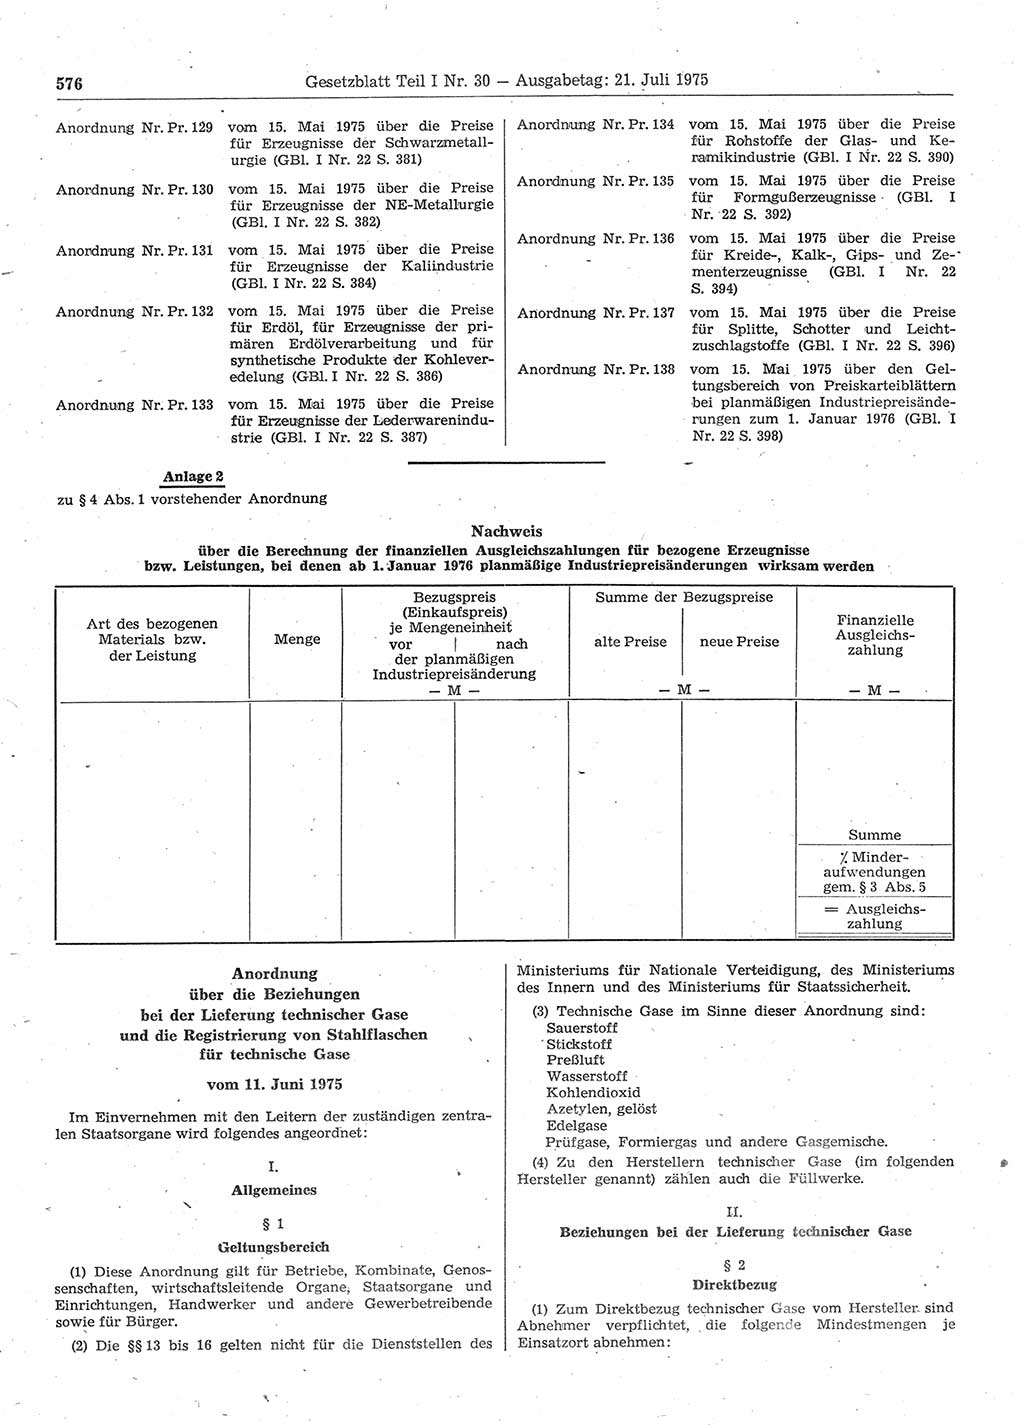 Gesetzblatt (GBl.) der Deutschen Demokratischen Republik (DDR) Teil Ⅰ 1975, Seite 576 (GBl. DDR Ⅰ 1975, S. 576)